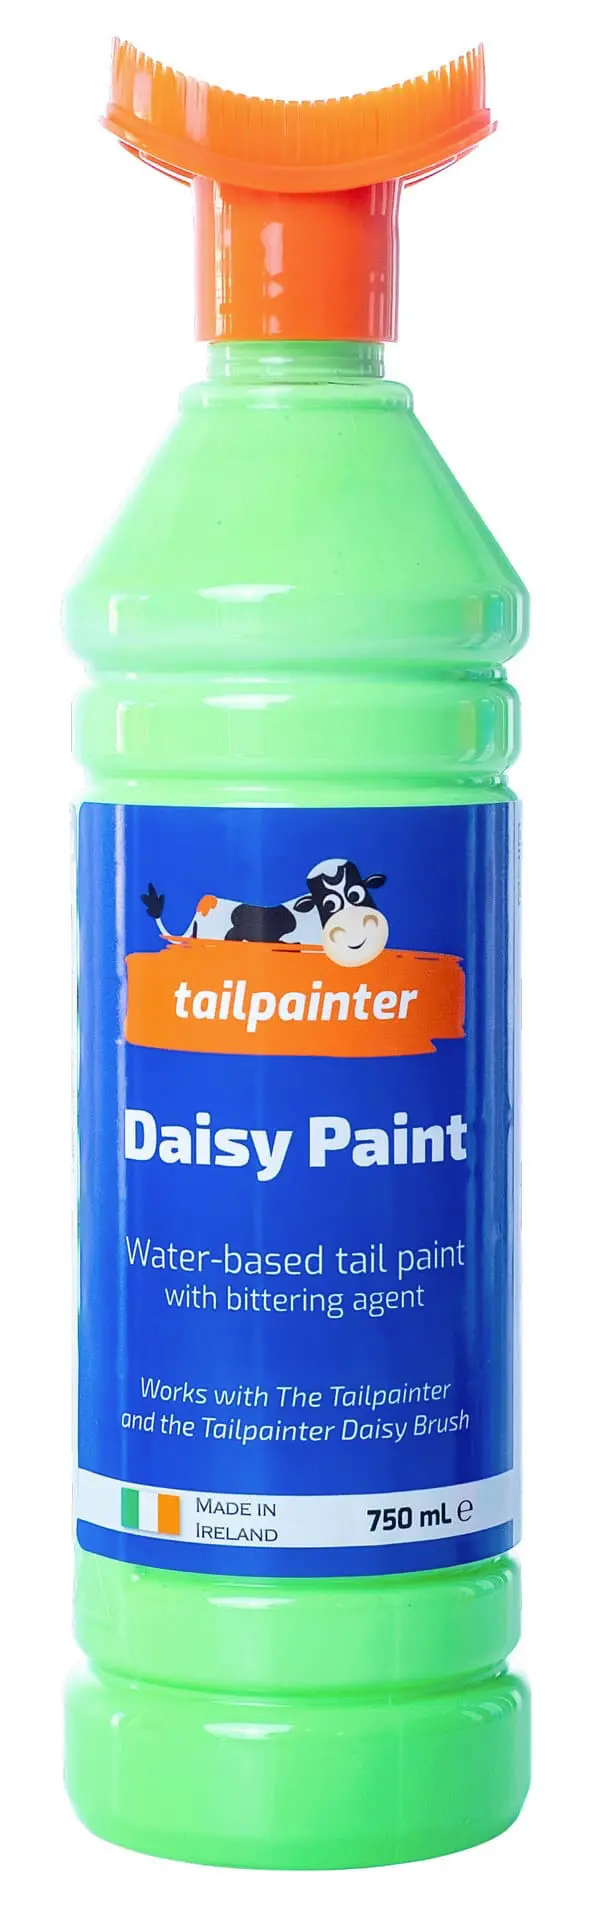 Daisy Paint inkl. Bürste, grün, 750 ml